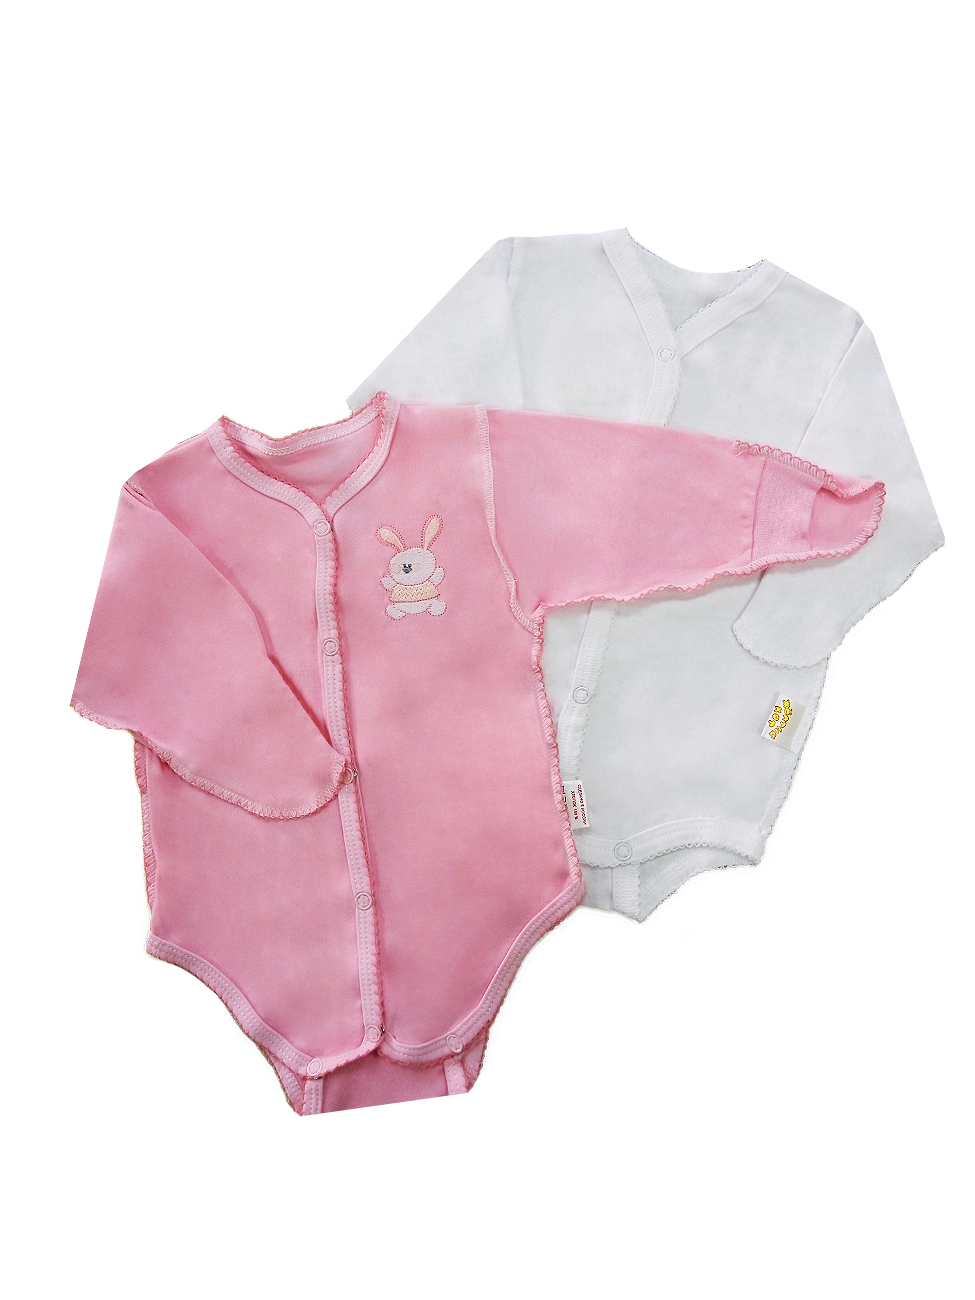 Комплект одежды для девочек Желтый кот  Цвет розовый размер 62